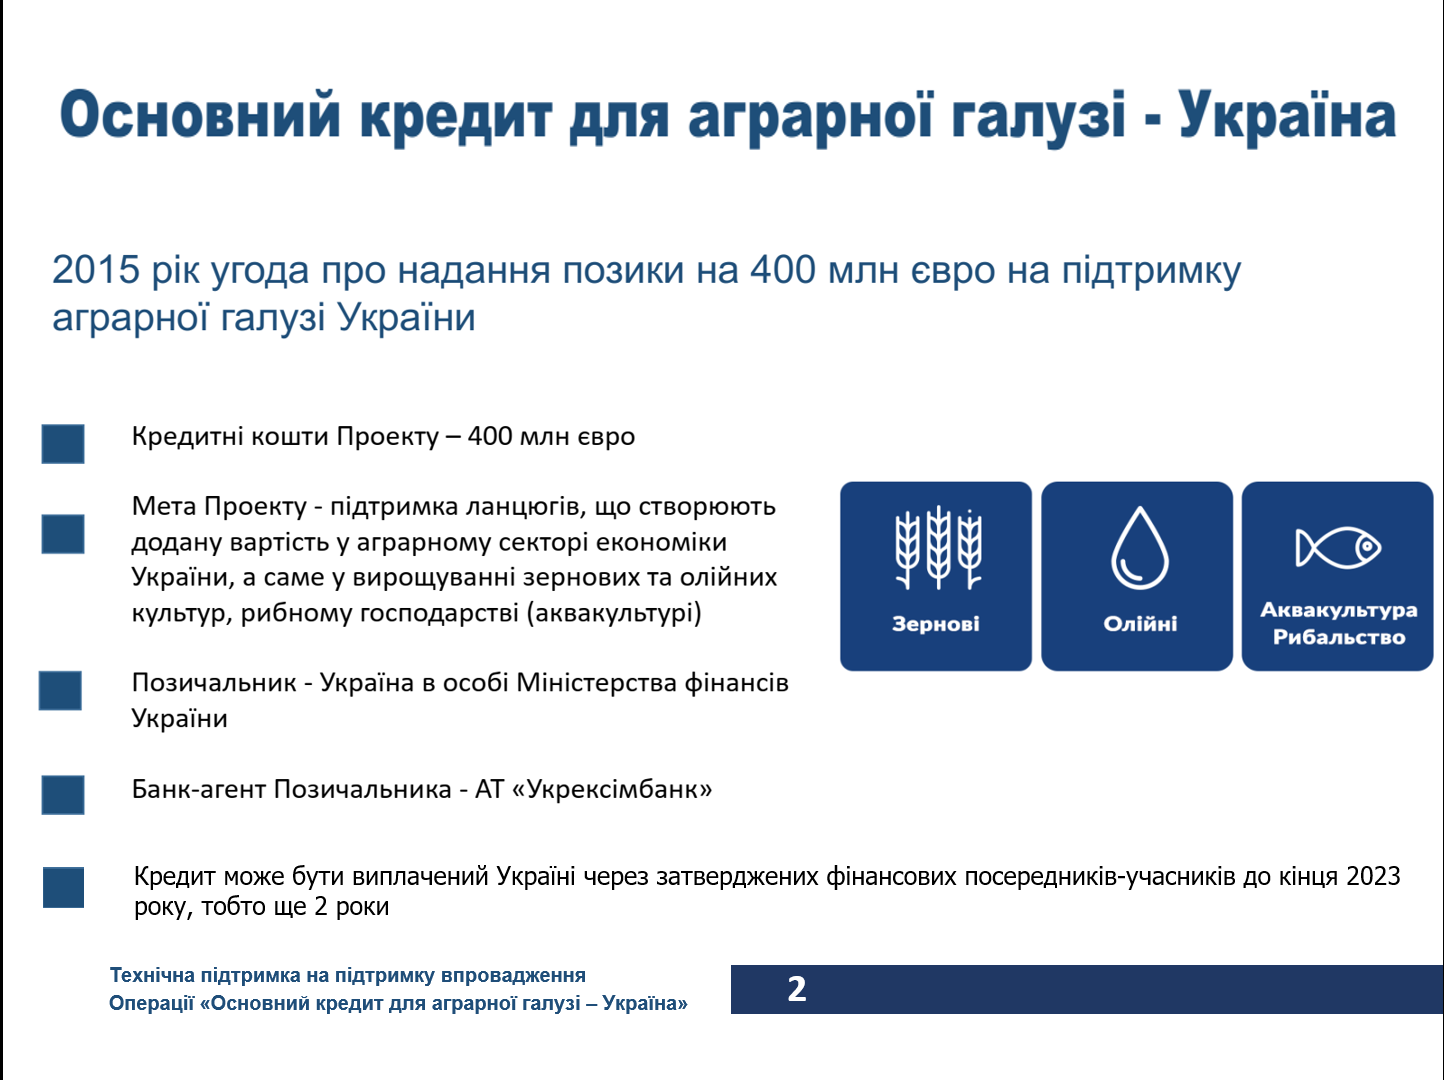 Додатково проект ЕІБ  “Основний кредит для аграрної галузі - Україна” 5